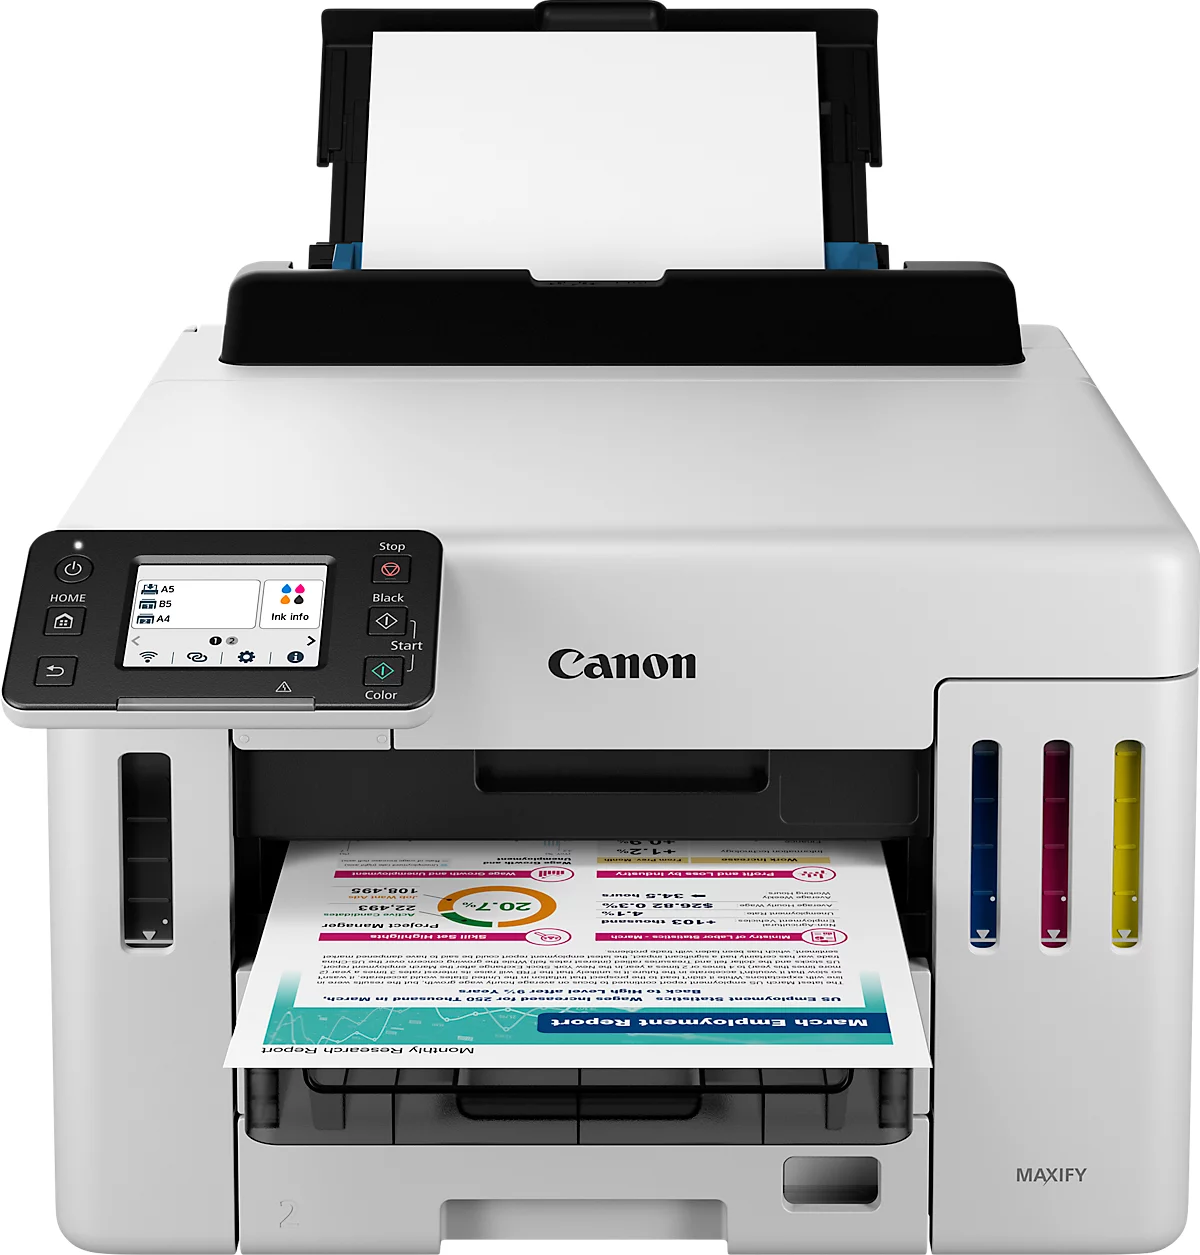 Tintenstrahldrucker Canon MAXIFY GX5550, USB/LAN/WLAN/Cloud, Auto-Duplex, Mobildruck, bis A4, inkl. CMYK-Tintenflaschen